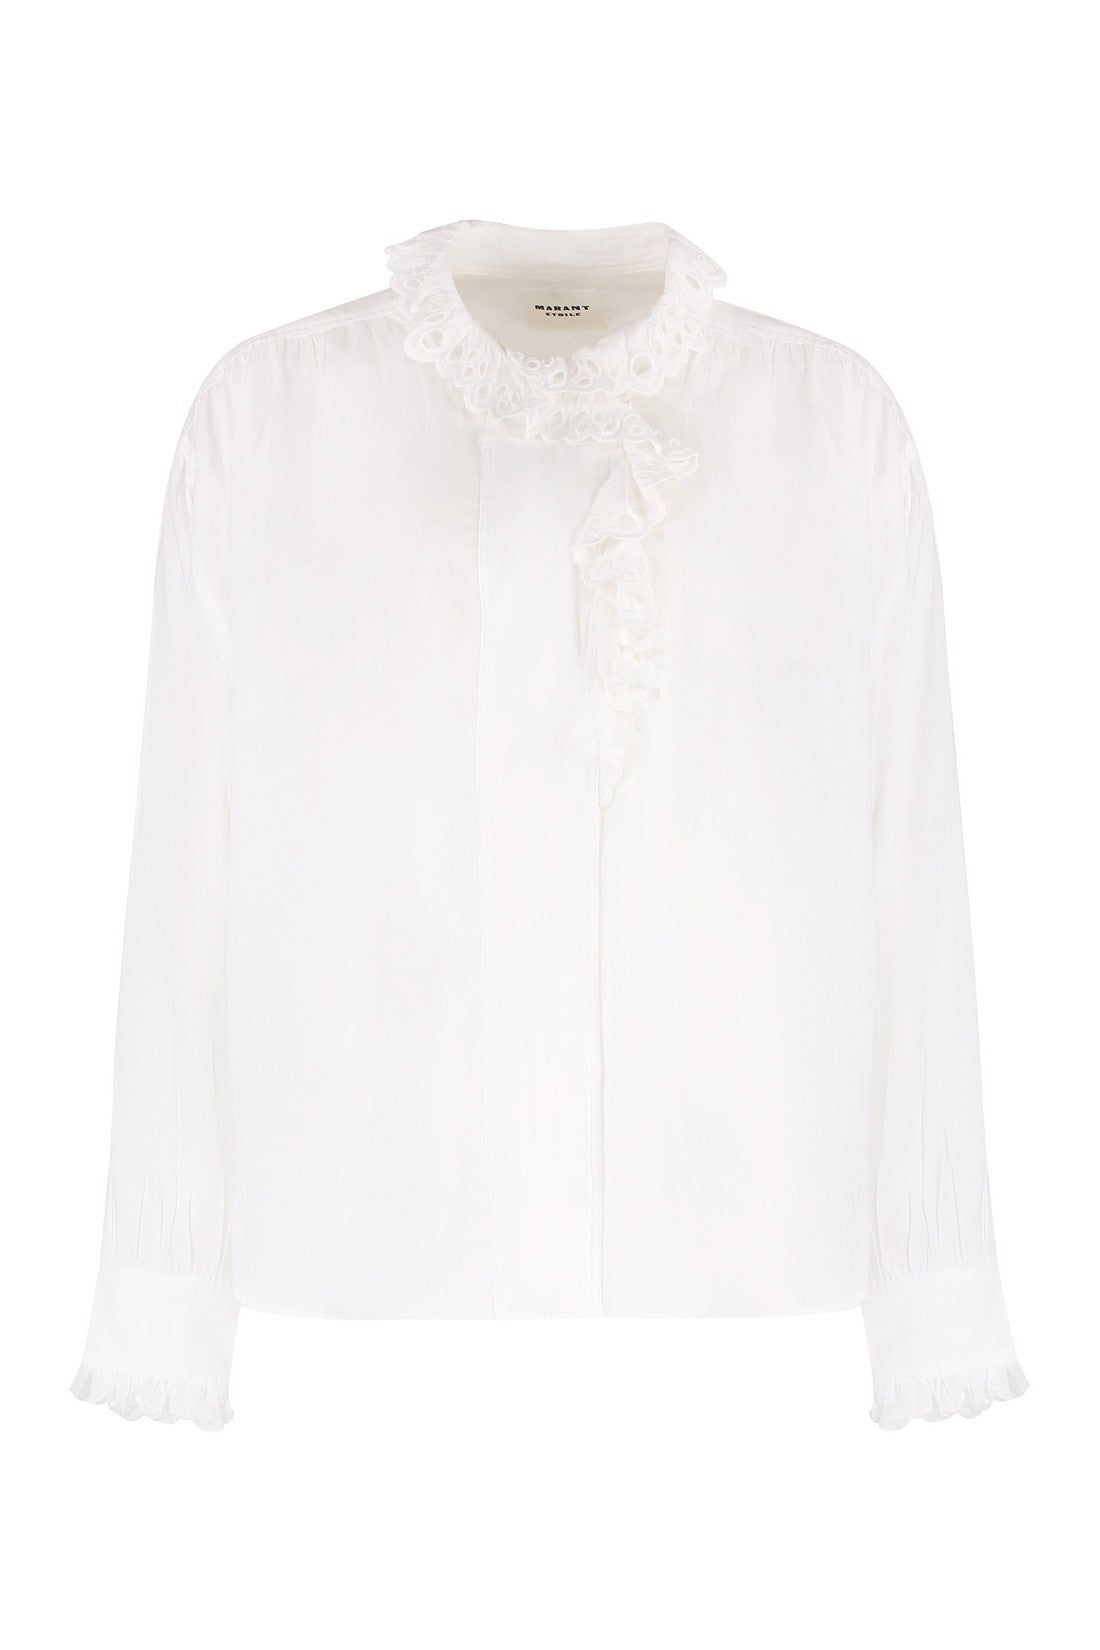 Isabel Marant Étoile-OUTLET-SALE-Kanio cotton shirt-ARCHIVIST